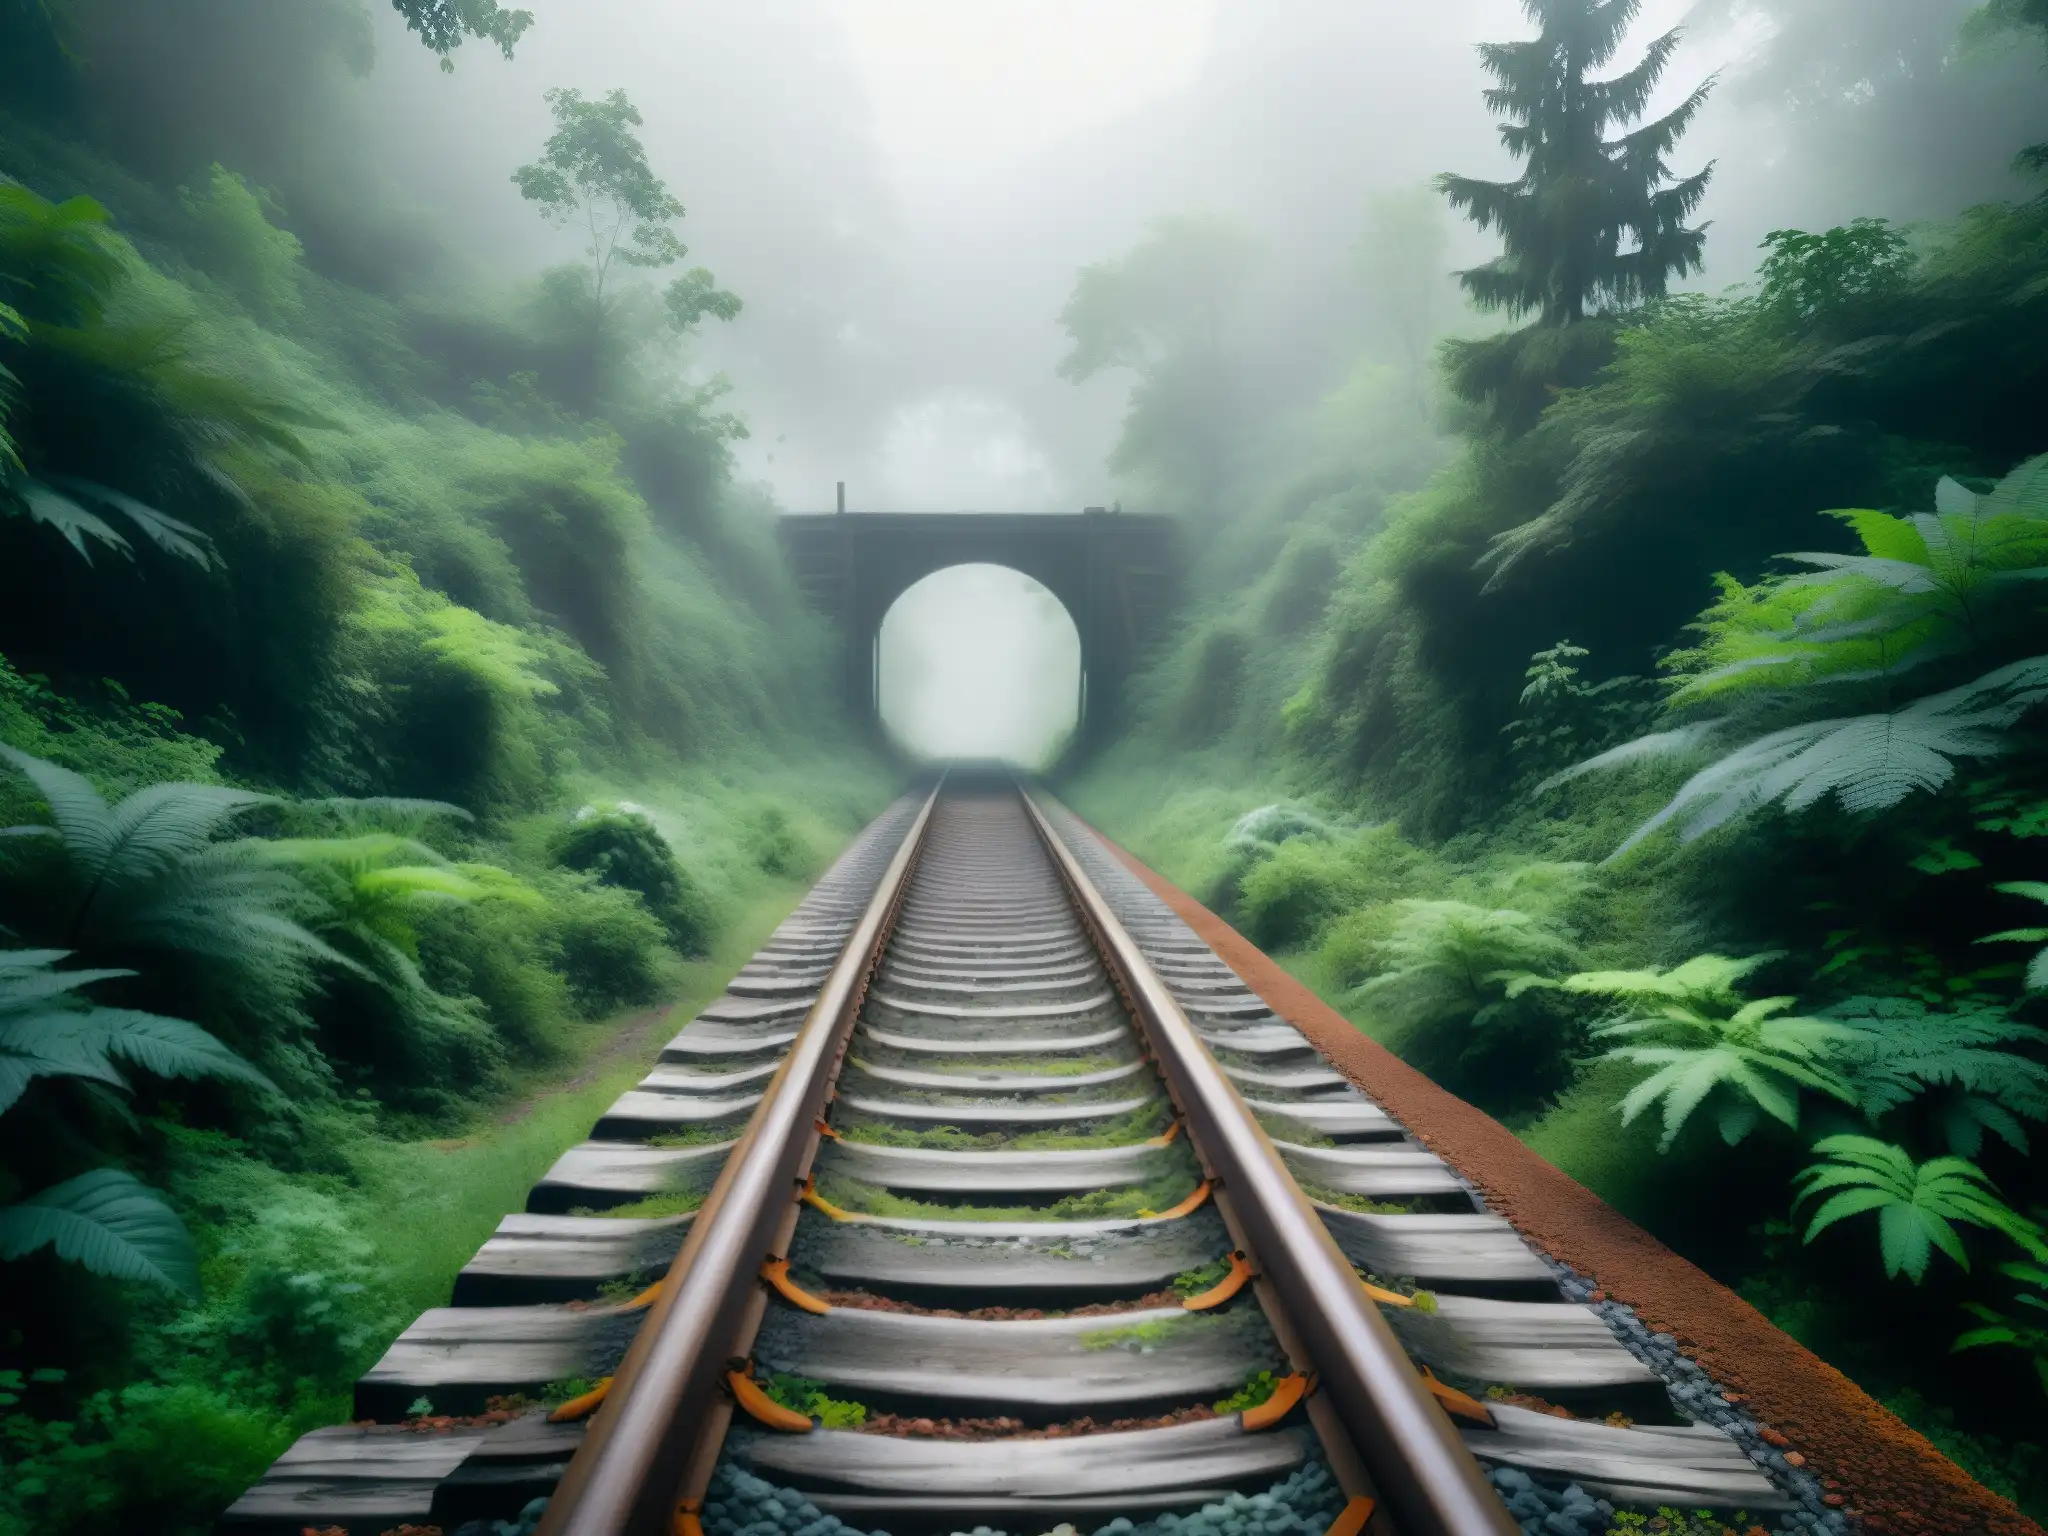 Un misterioso tren fantasma se adentra en la densa selva india, evocando mitos y leyendas